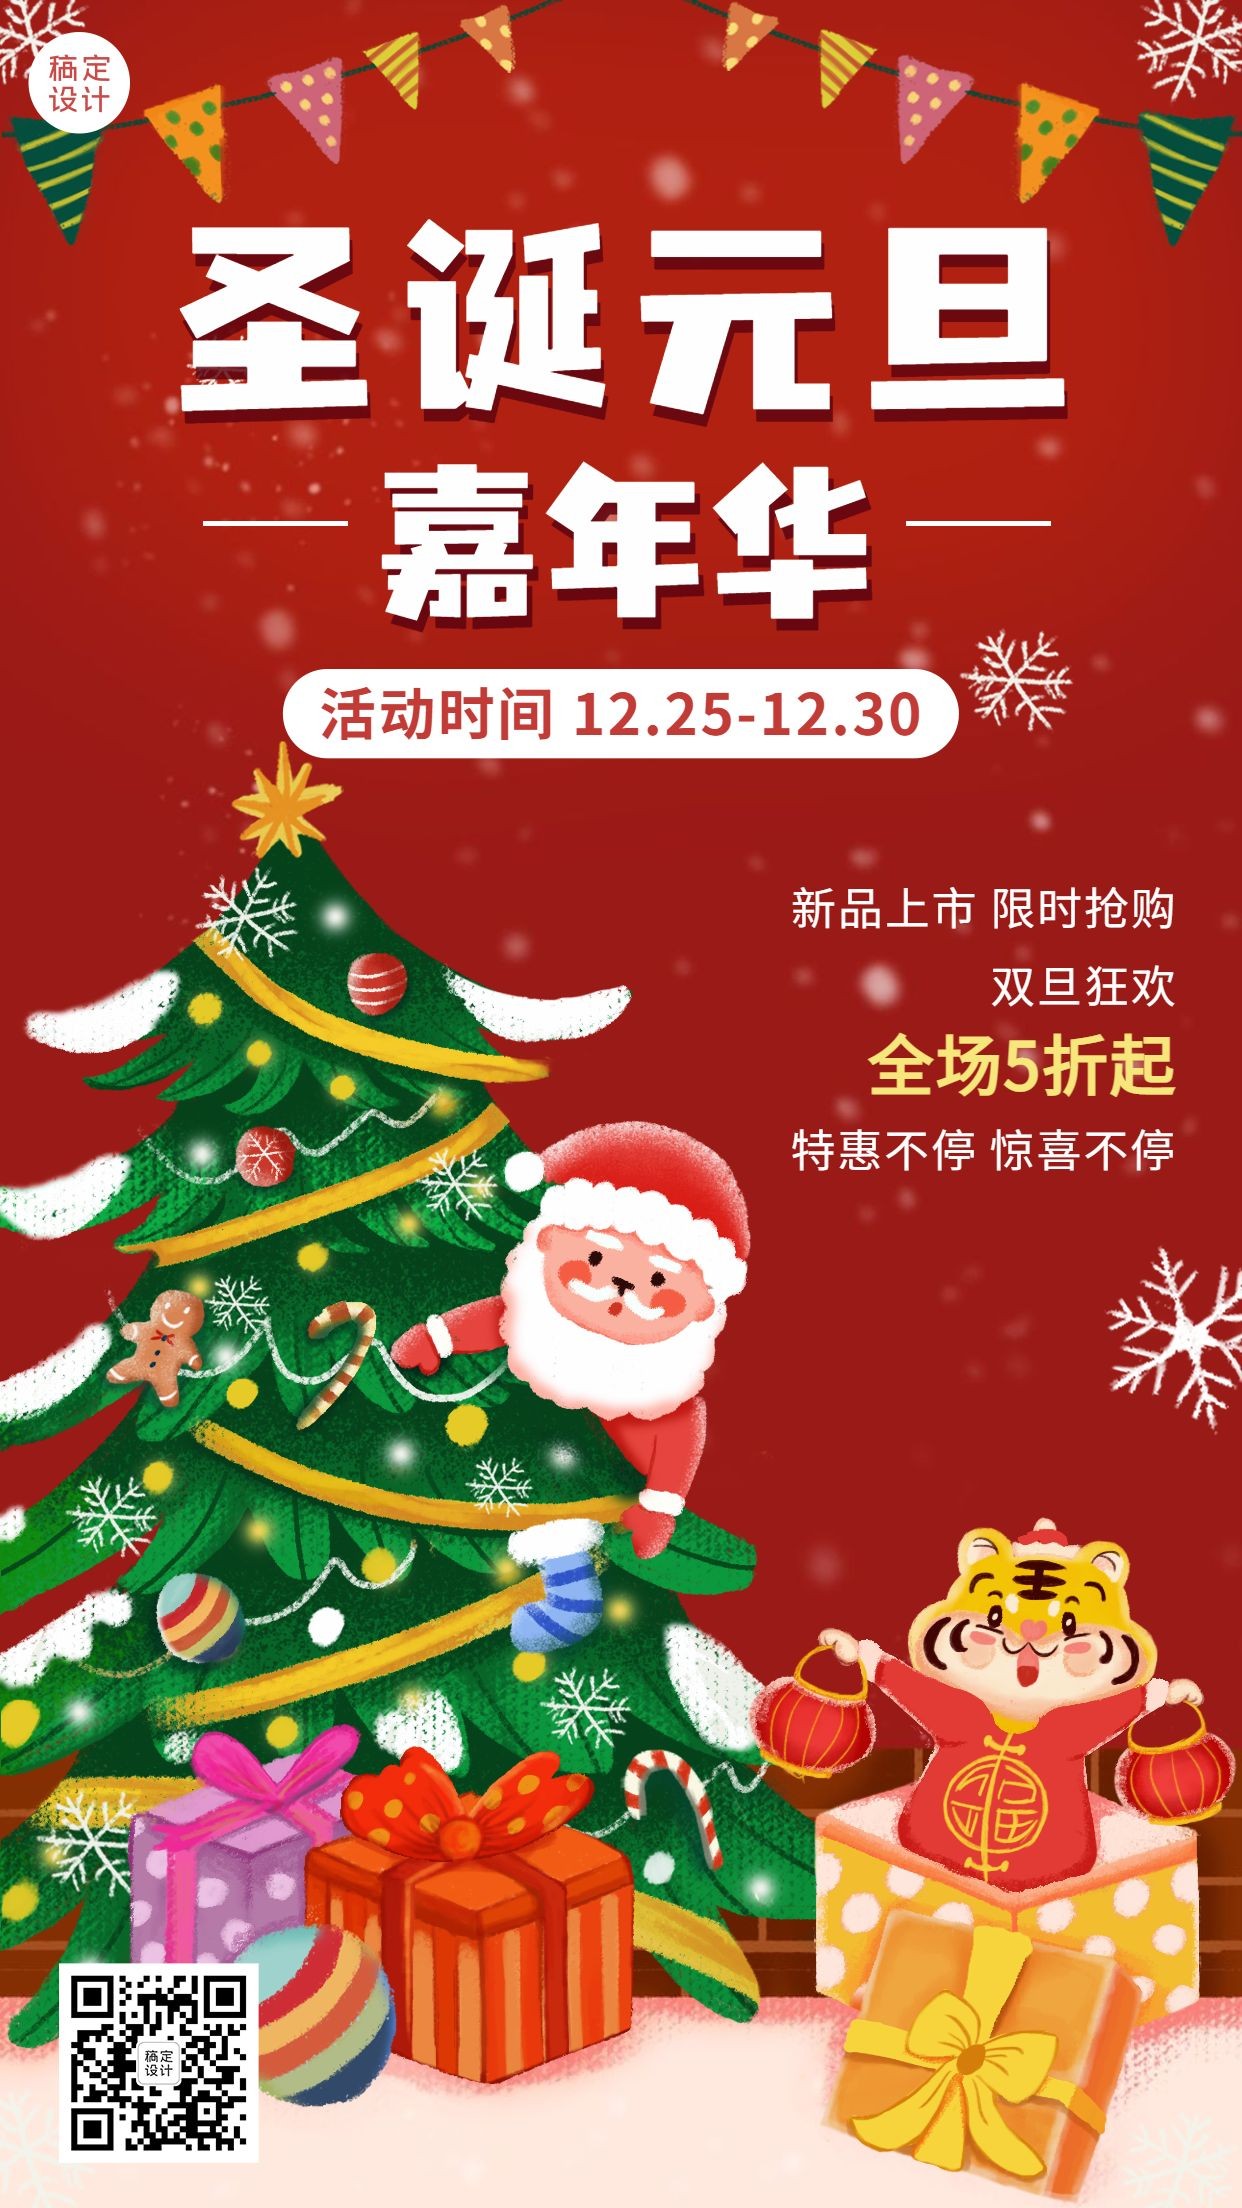 双旦圣诞节活动促销插画手机海报预览效果